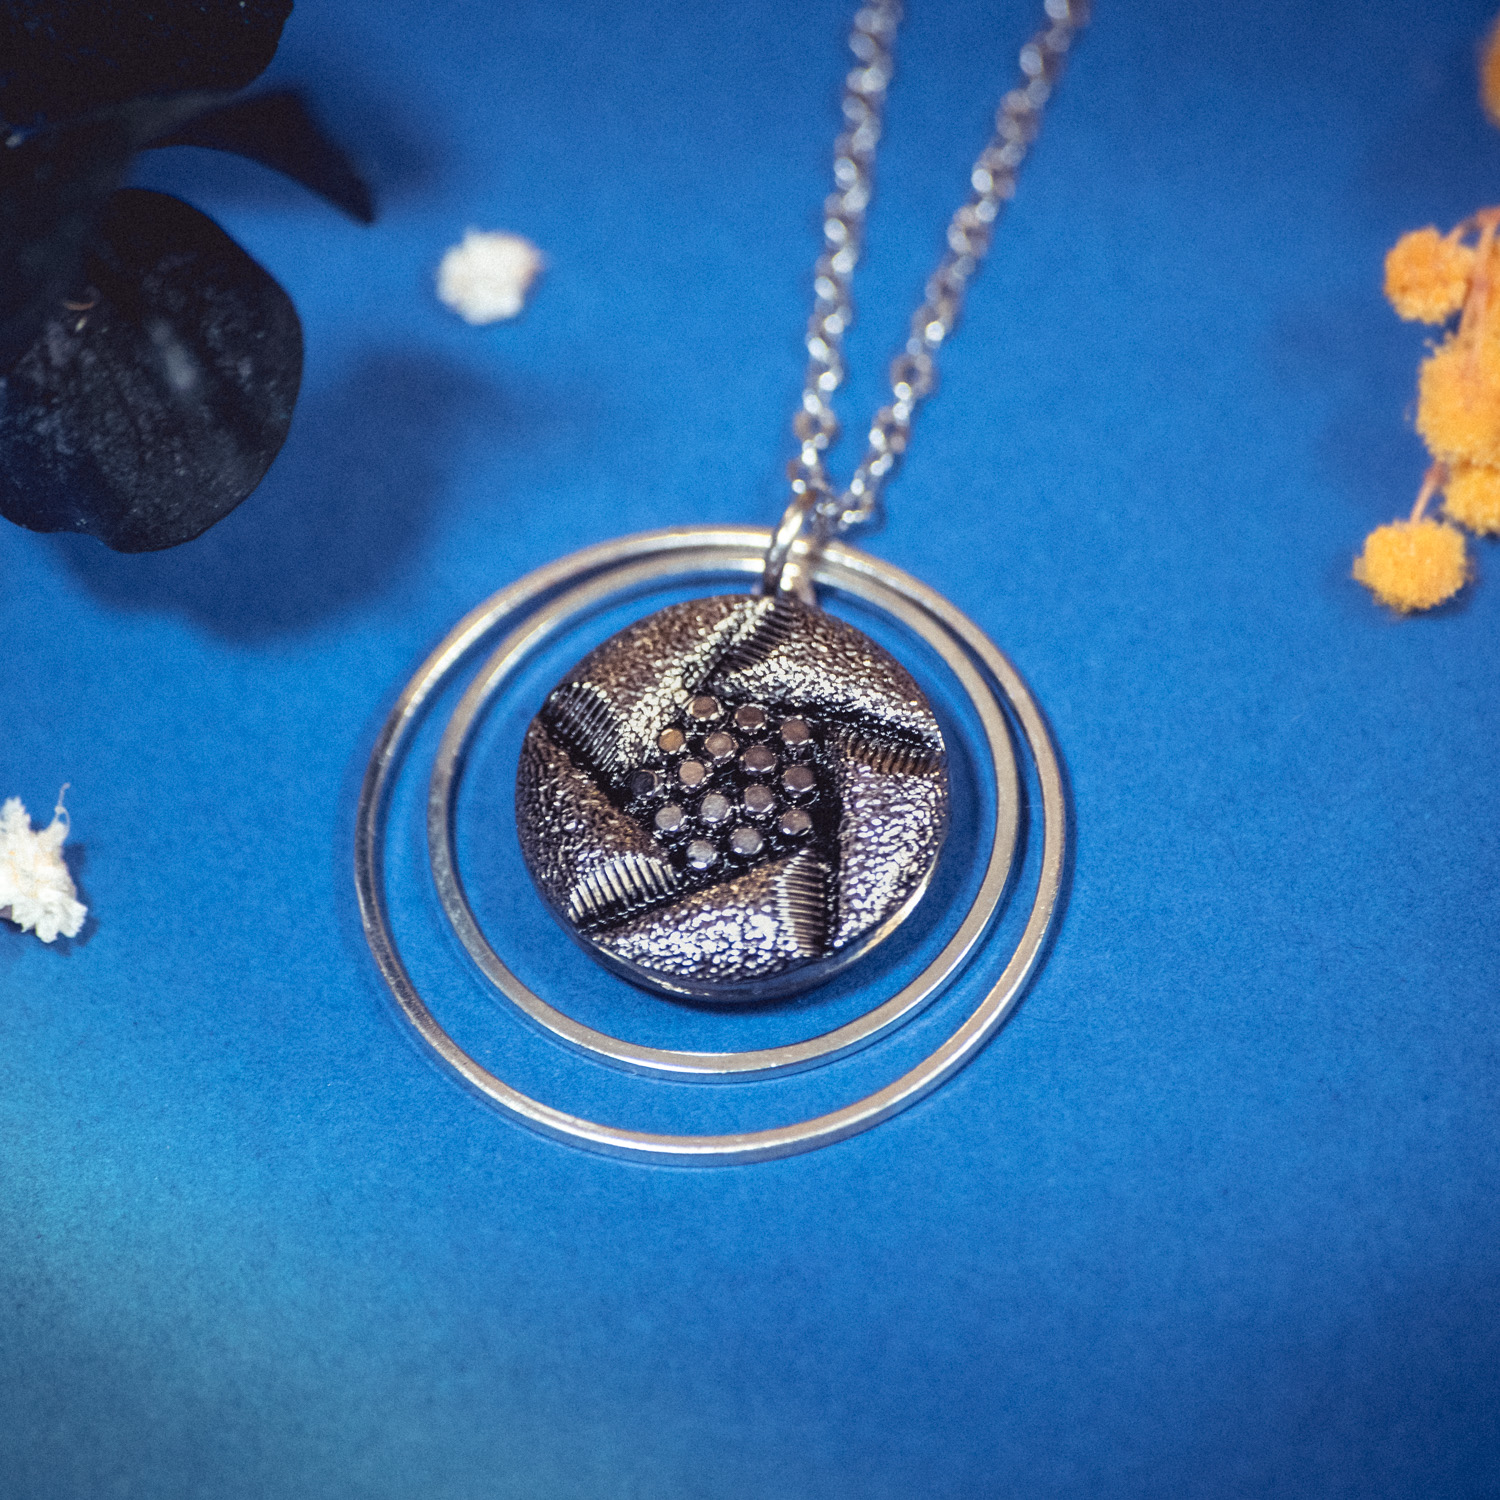 Assuna – Collier Lunare Arlette – bouton ancien 1940 – collier d’inspiration vintage en forme de croissant de lune